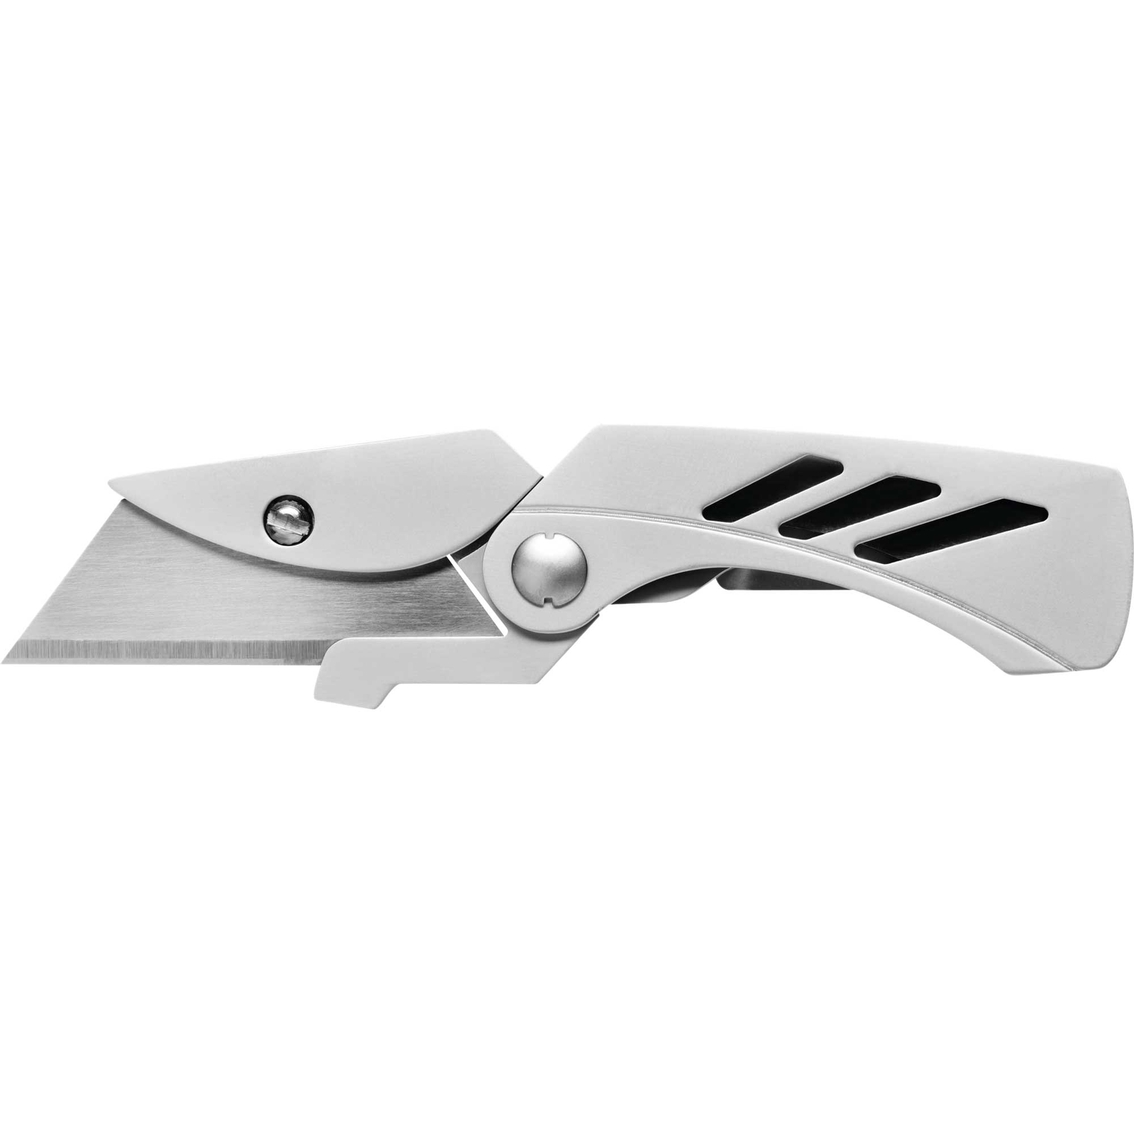 Gerber Knives and Tools Gerber Exchange-A-Blade Pocket Knife